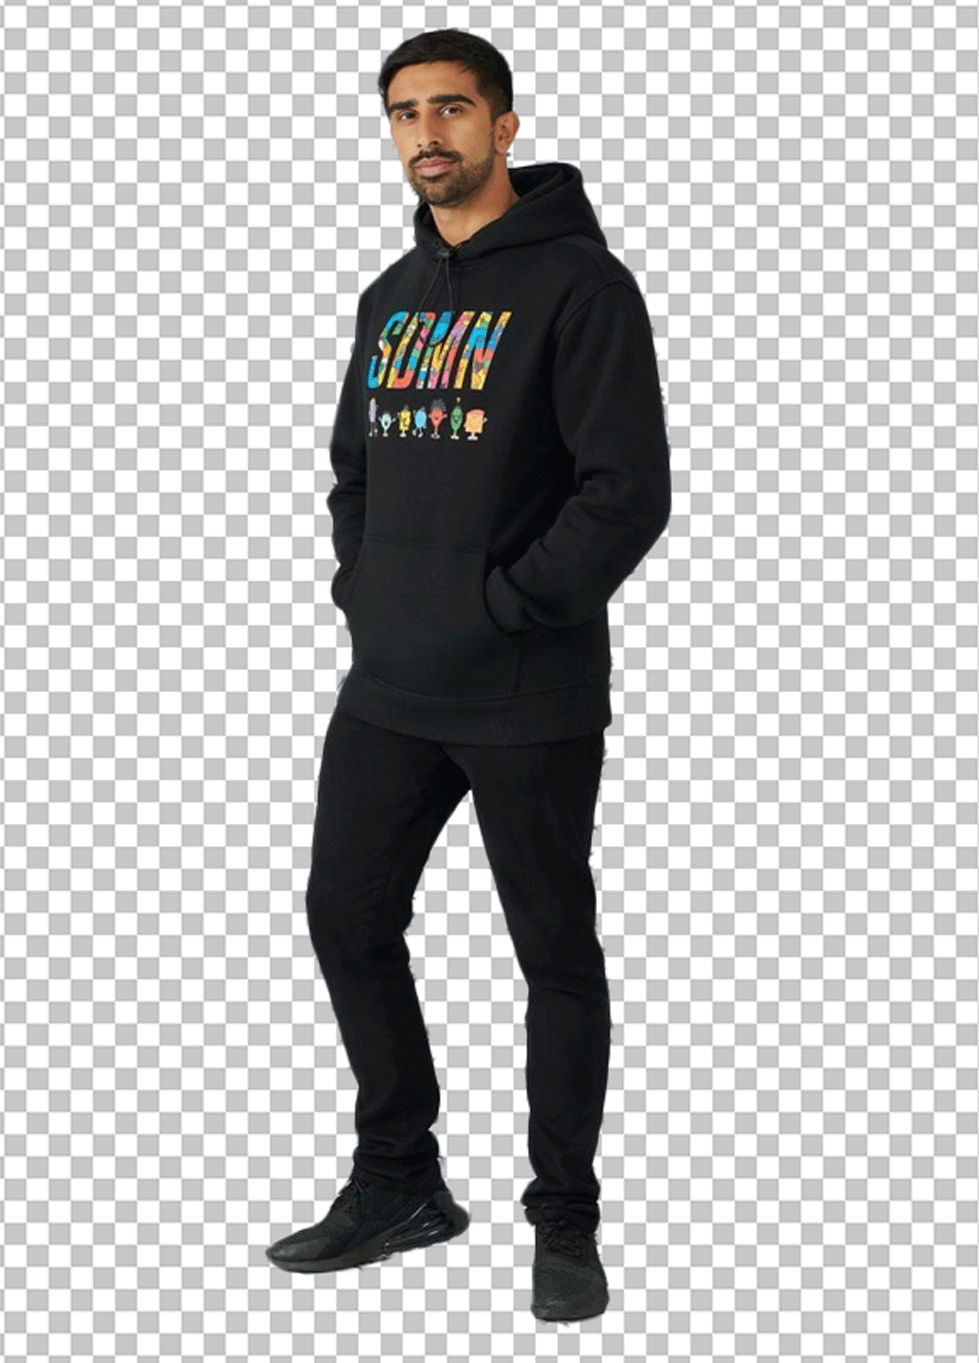 Vikkstar is standing in a black hoodie PNG Image